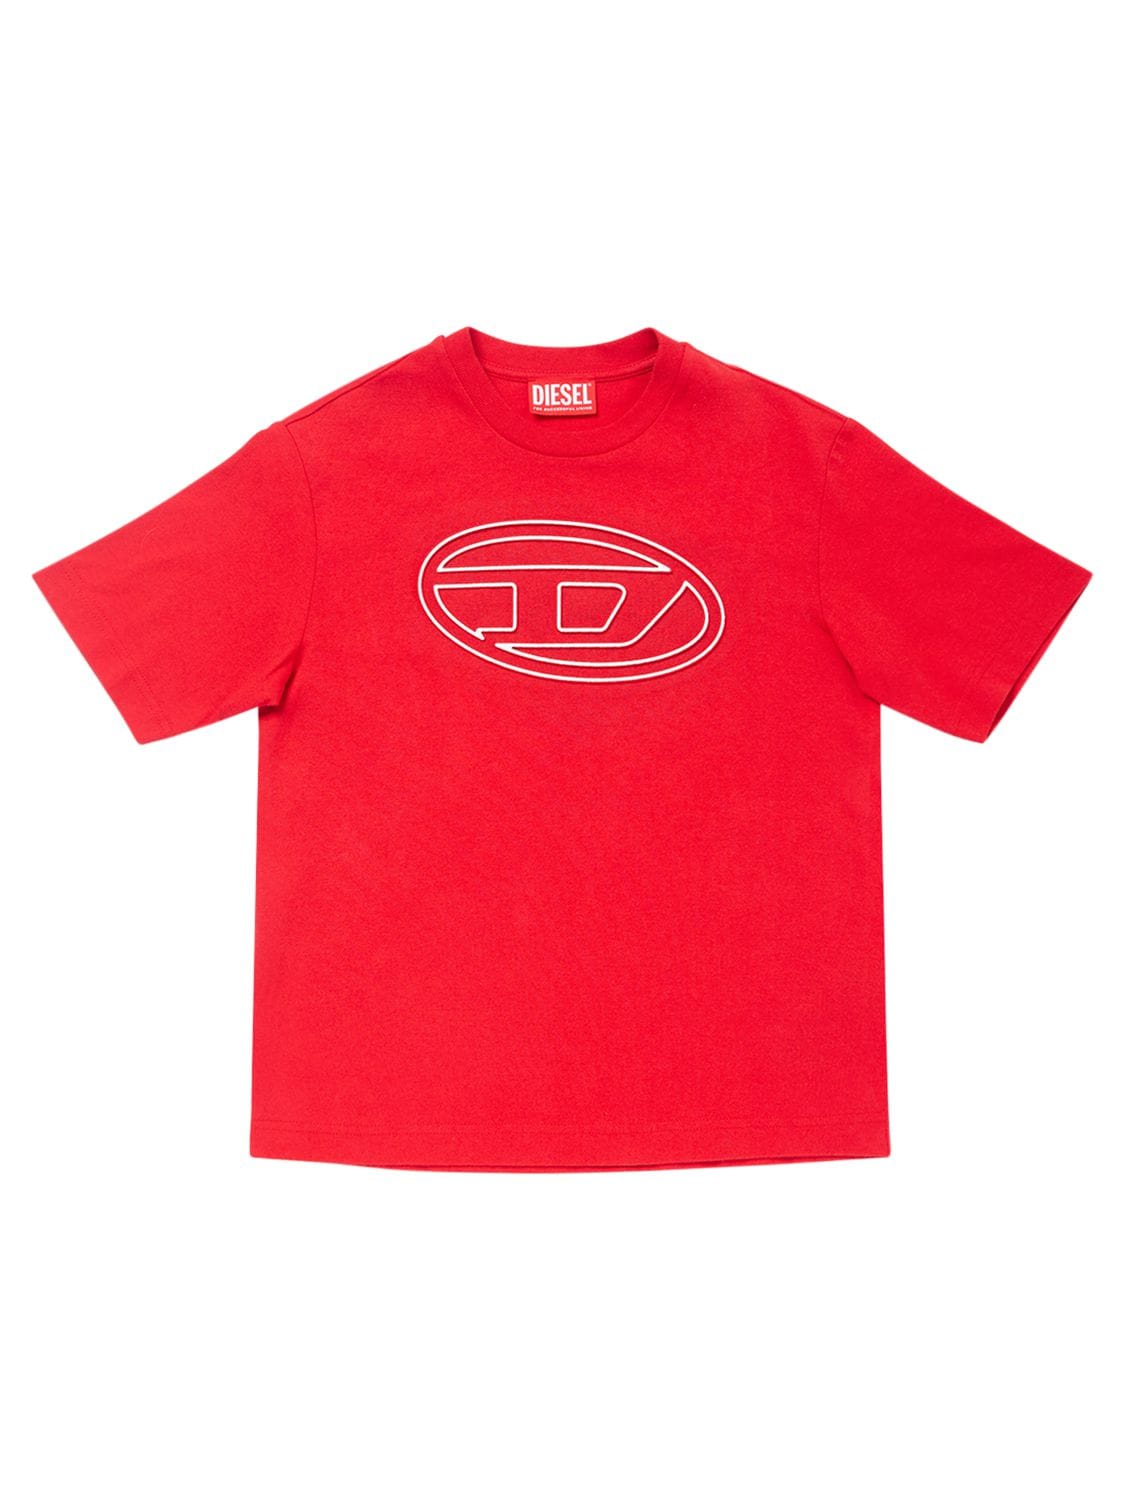 Diesel Kids' Cotton Logo T-shirt In Red